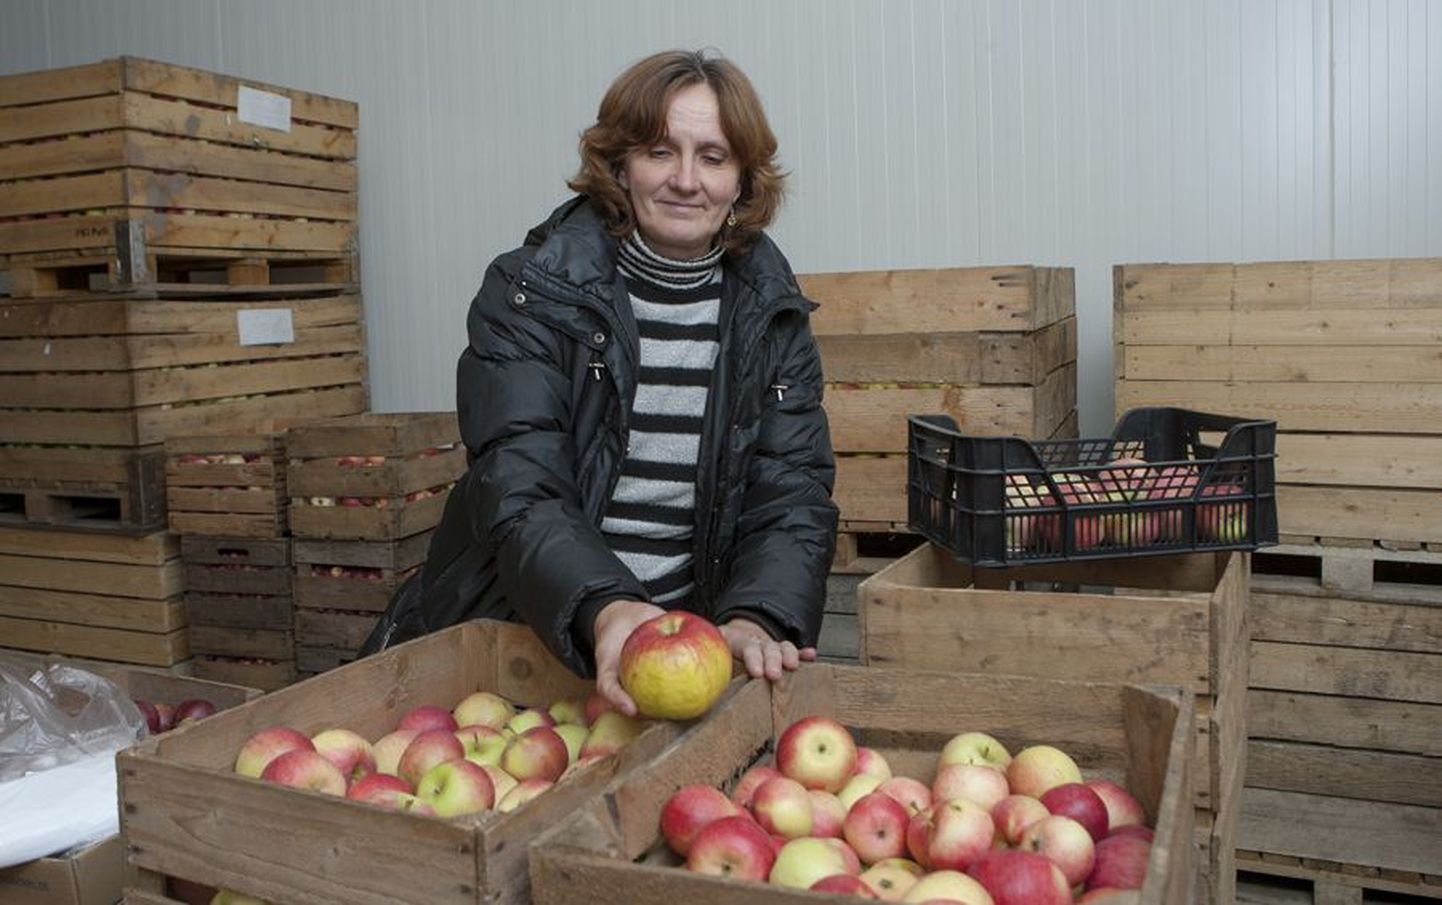 Eesti maaülikooli Polli aiandusuuringute keskuse teadur Kersti Kahu on tänavuste õuntega väga rahul.